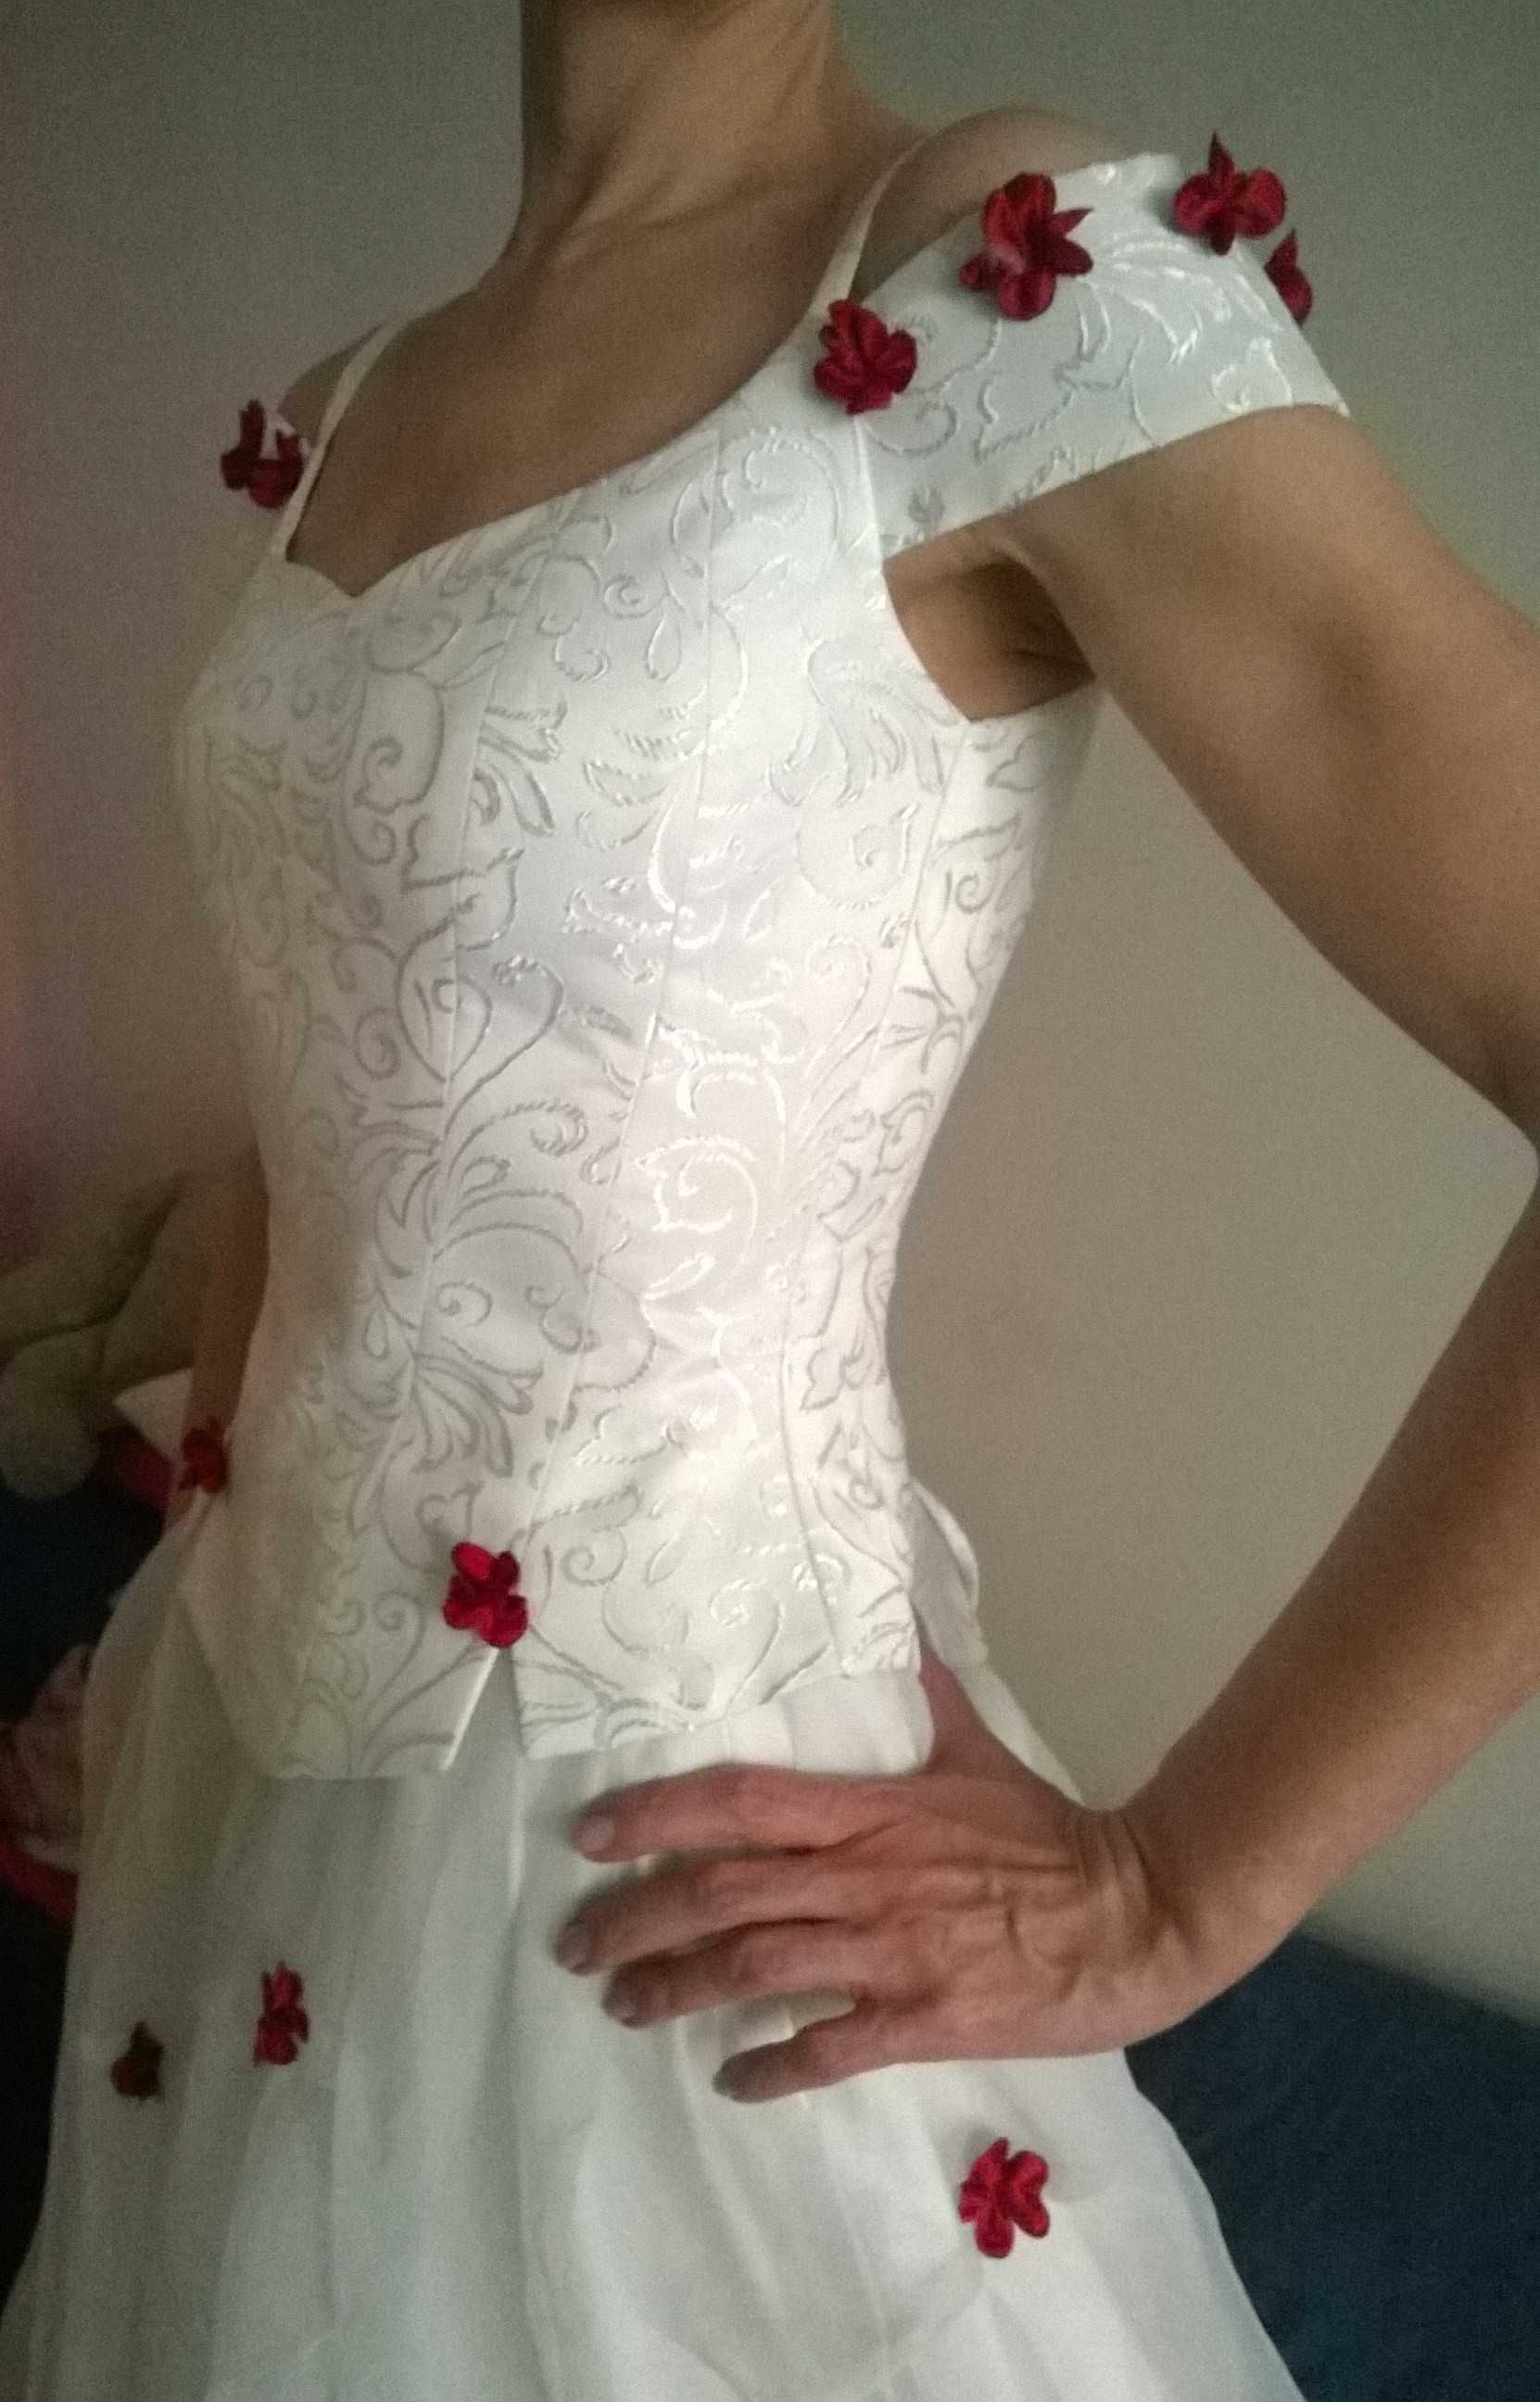 Sukienka ślubna, rozmiar 36